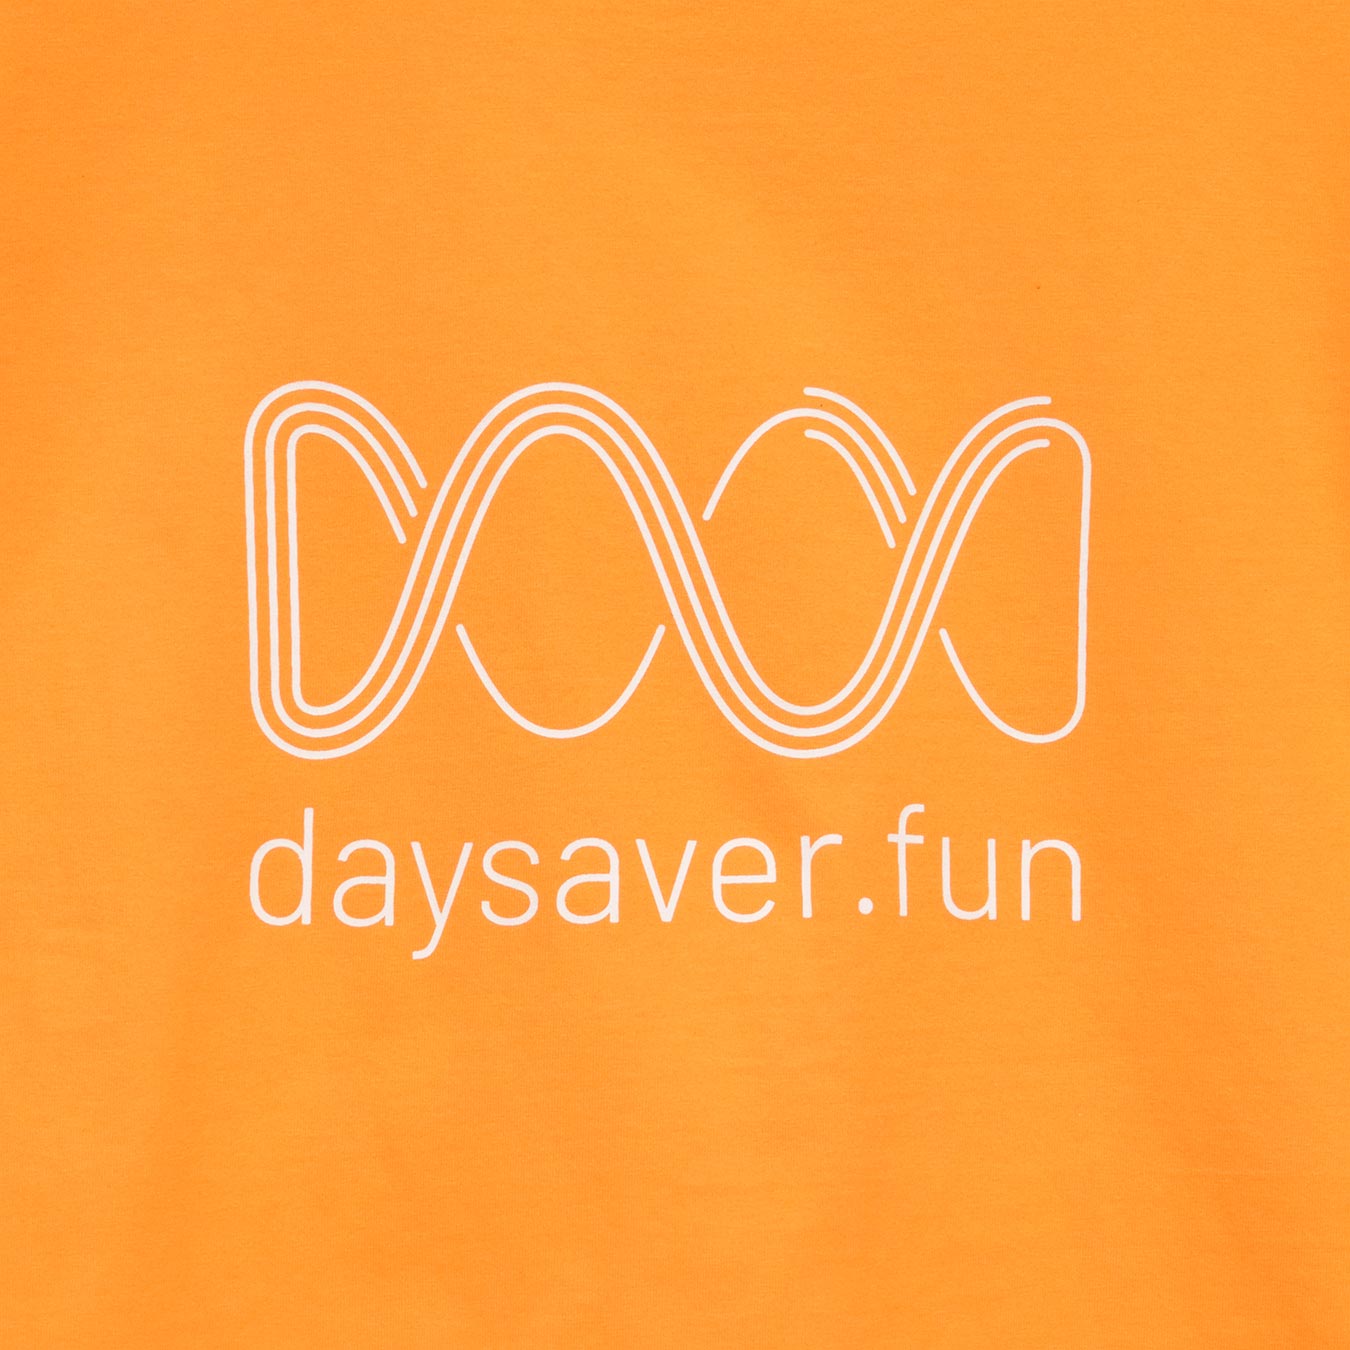 Logo on orange